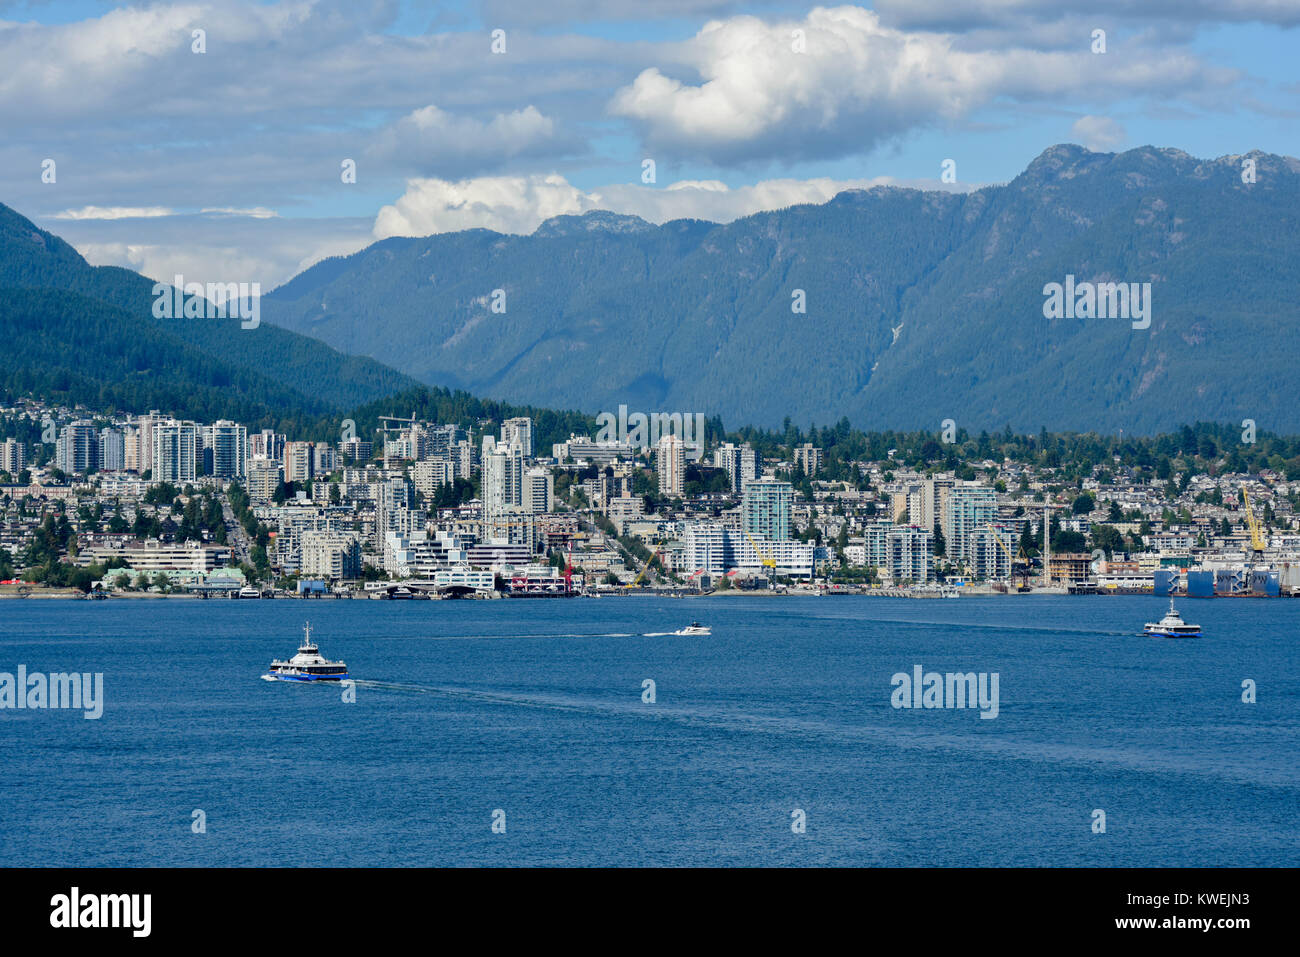 Port de Vancouver, de la Colombie-Britannique, en été sur une journée ensoleillée - Canada Place w/ un hydravion - hydravions - les navires, bateaux et moderne de la ville de Vancouver Banque D'Images